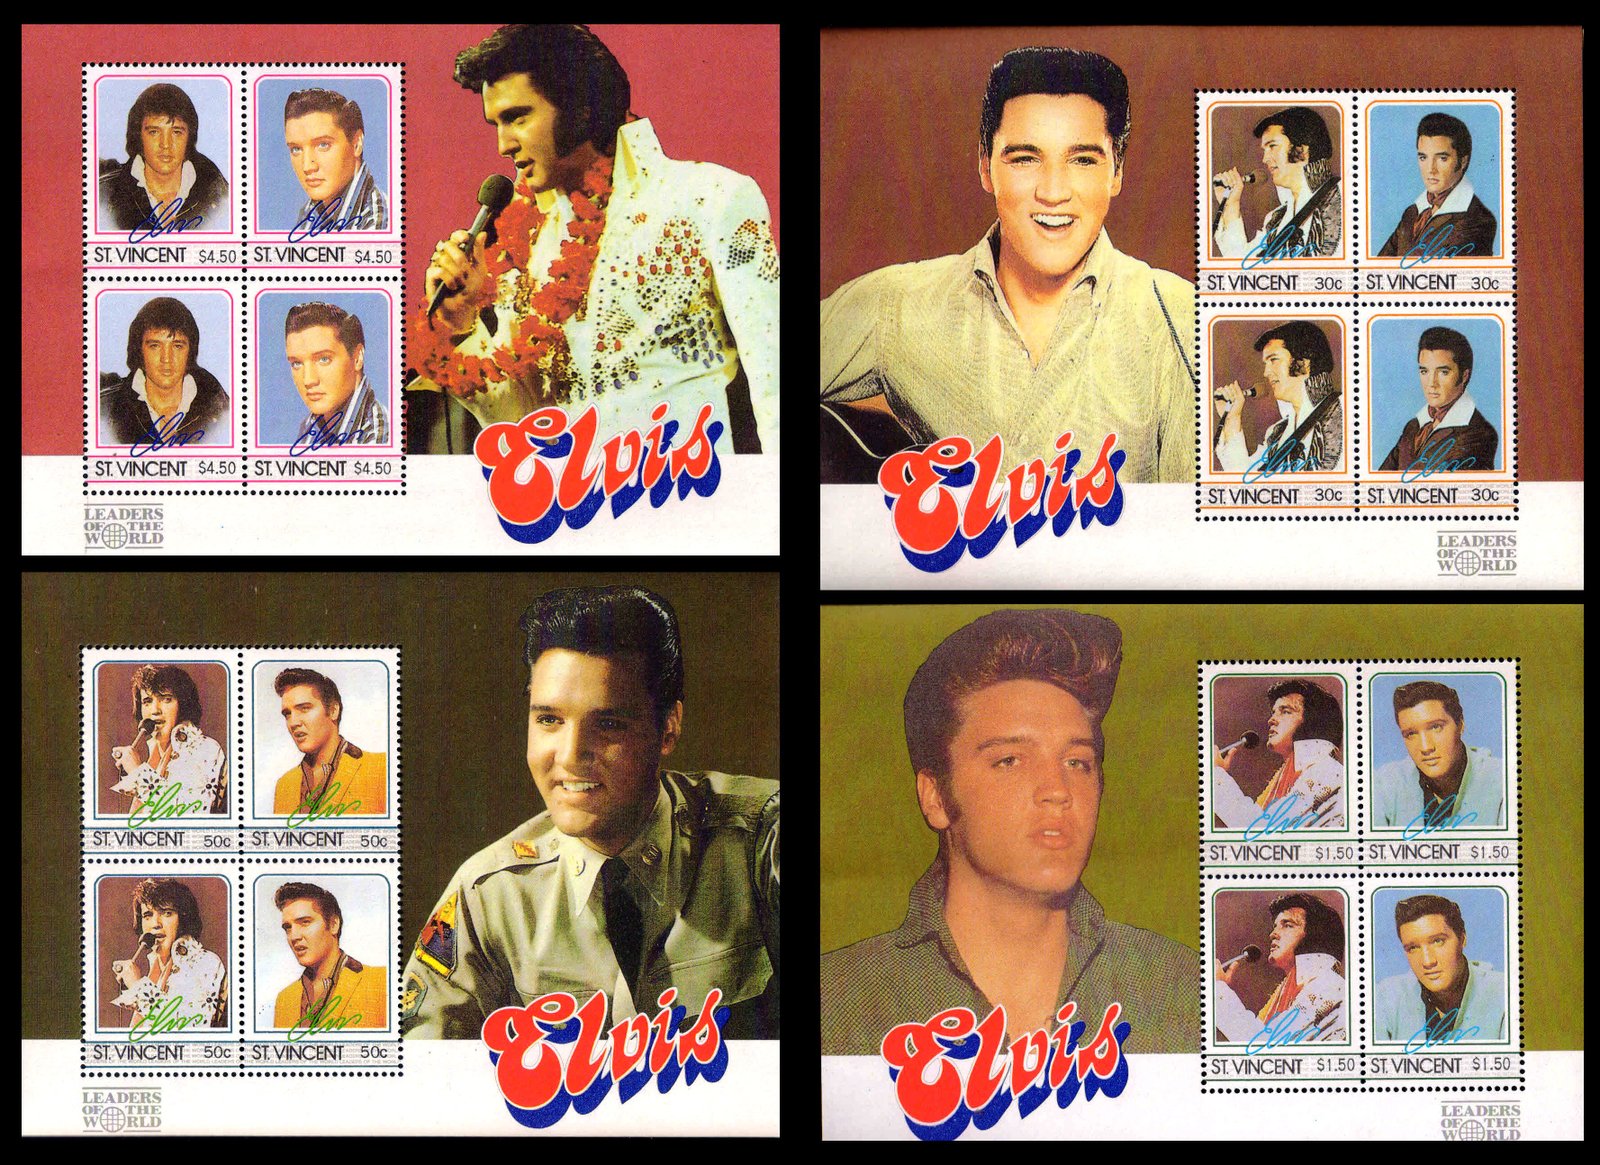 ST. VINCENT 1985 - Elvis Presley (Entertainer). Various Portraits. Music. Set of 4 Miniature Sheet MNH. S.G. MS 927